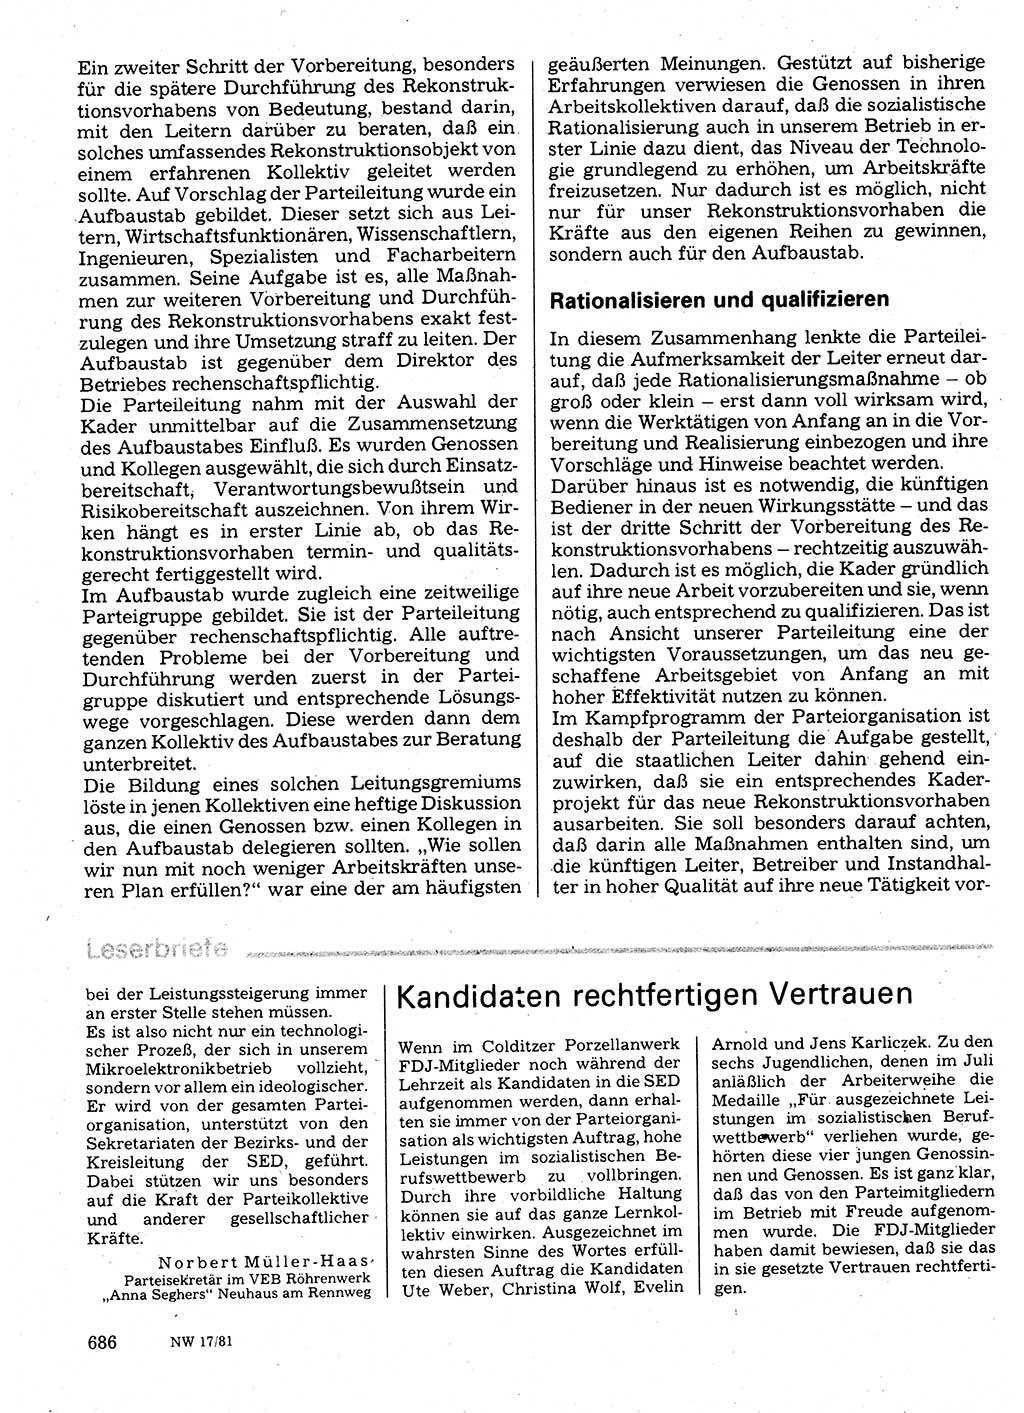 Neuer Weg (NW), Organ des Zentralkomitees (ZK) der SED (Sozialistische Einheitspartei Deutschlands) fÃ¼r Fragen des Parteilebens, 36. Jahrgang [Deutsche Demokratische Republik (DDR)] 1981, Seite 686 (NW ZK SED DDR 1981, S. 686)